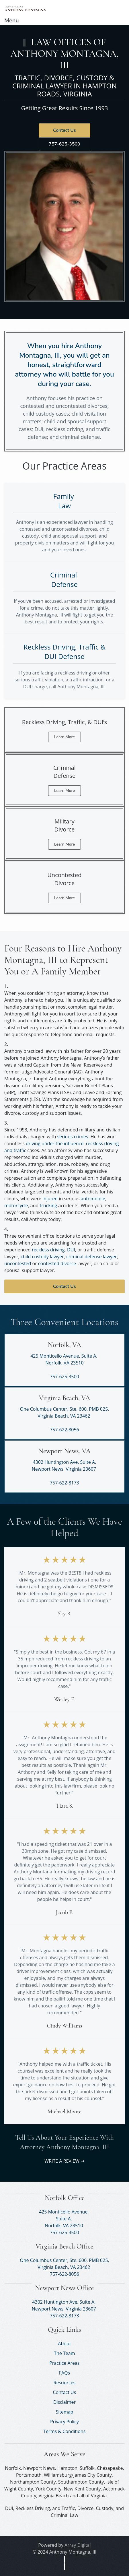 Montagna Klein Camden L.L.P. - Norfolk VA Lawyers